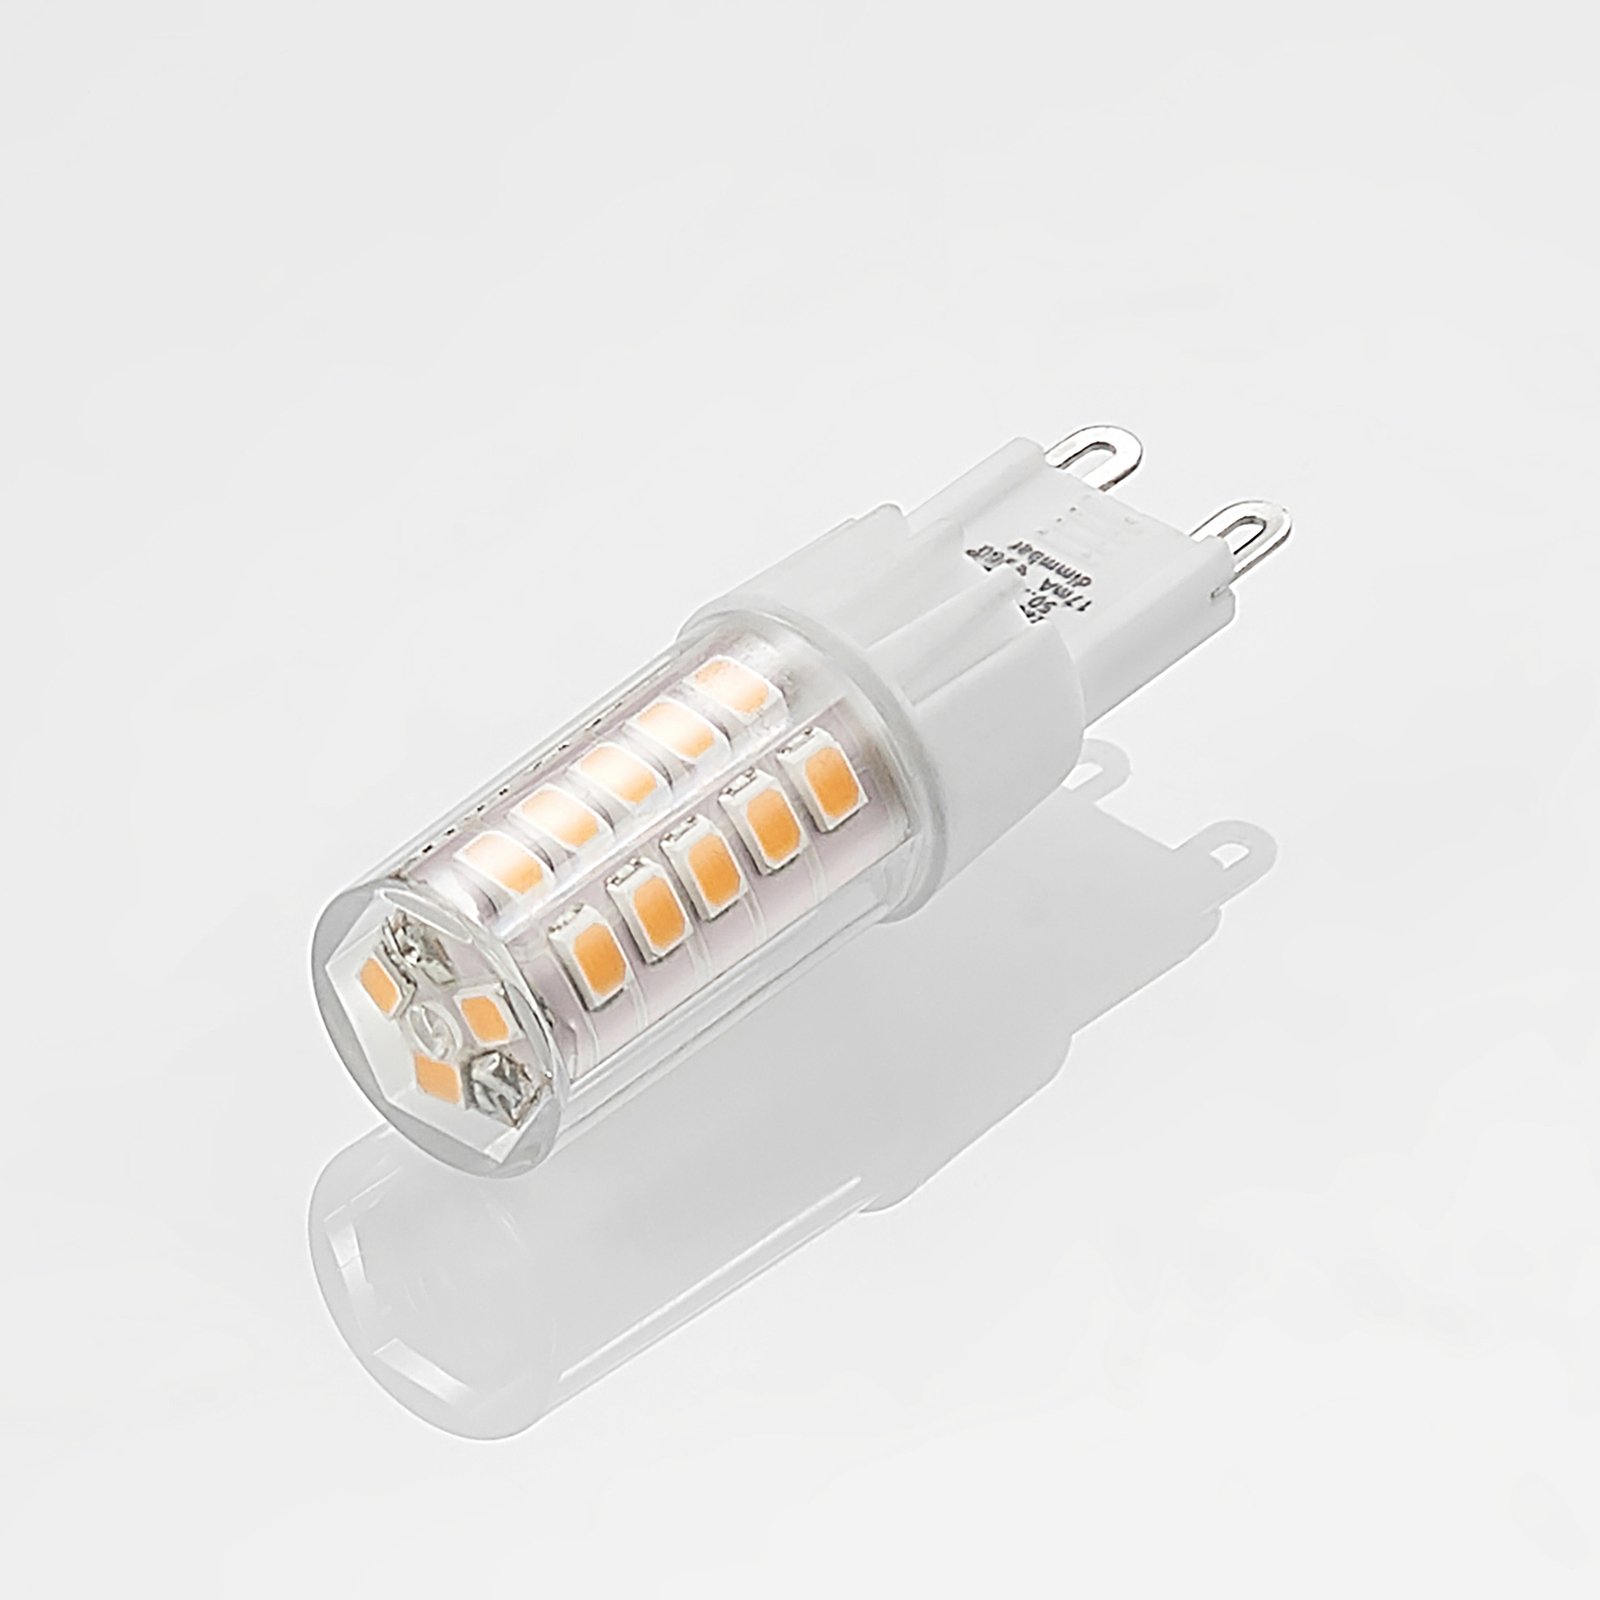 Arcchio bi-pin LED bulb G9 3.5 W 827 3-pack